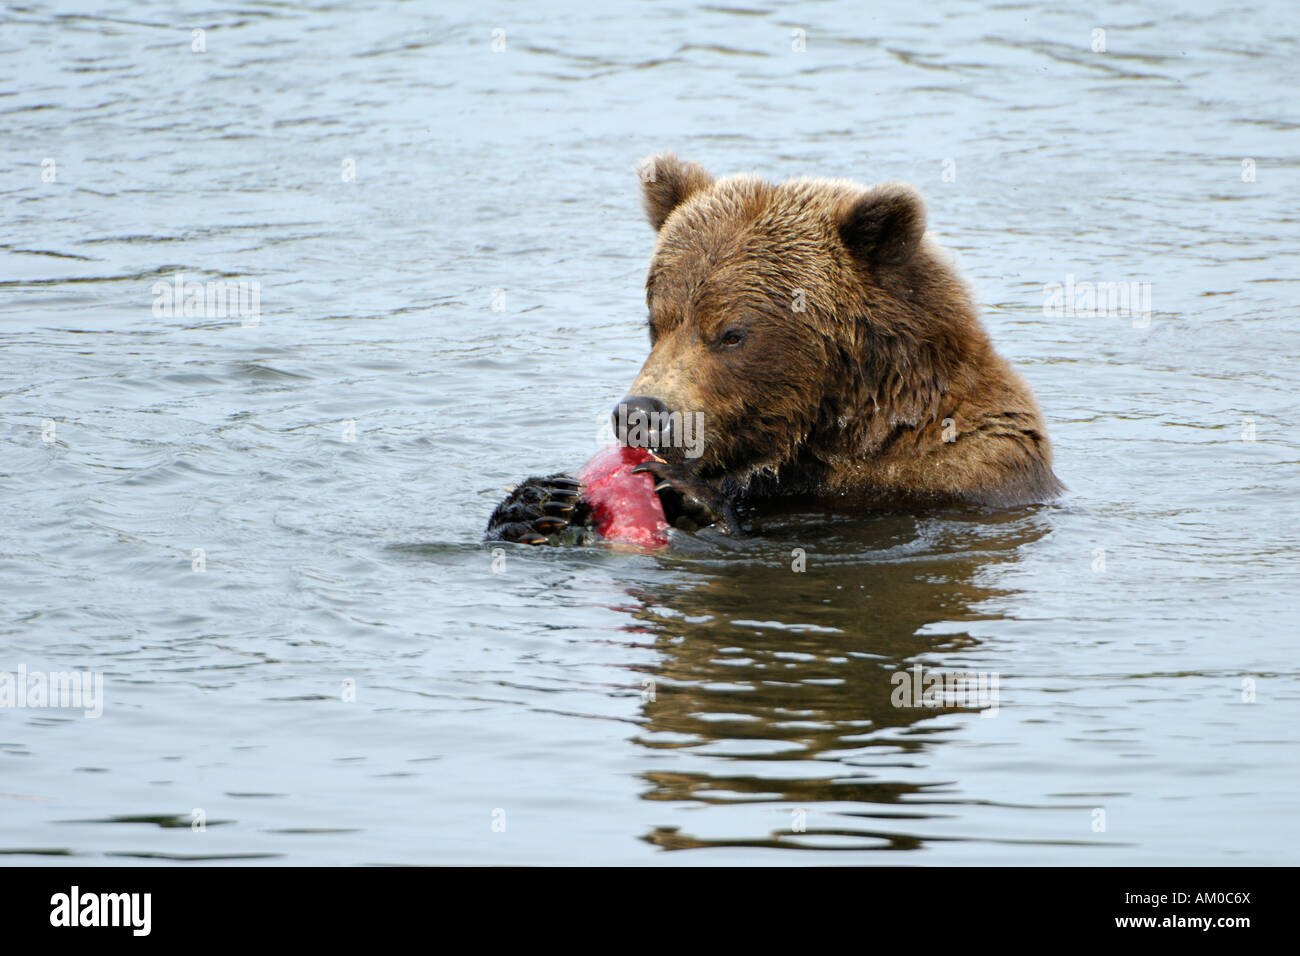 Alaska brown bear (ursus arctos) eating salmon, Katmai National Park, Alaska, USA Stock Photo